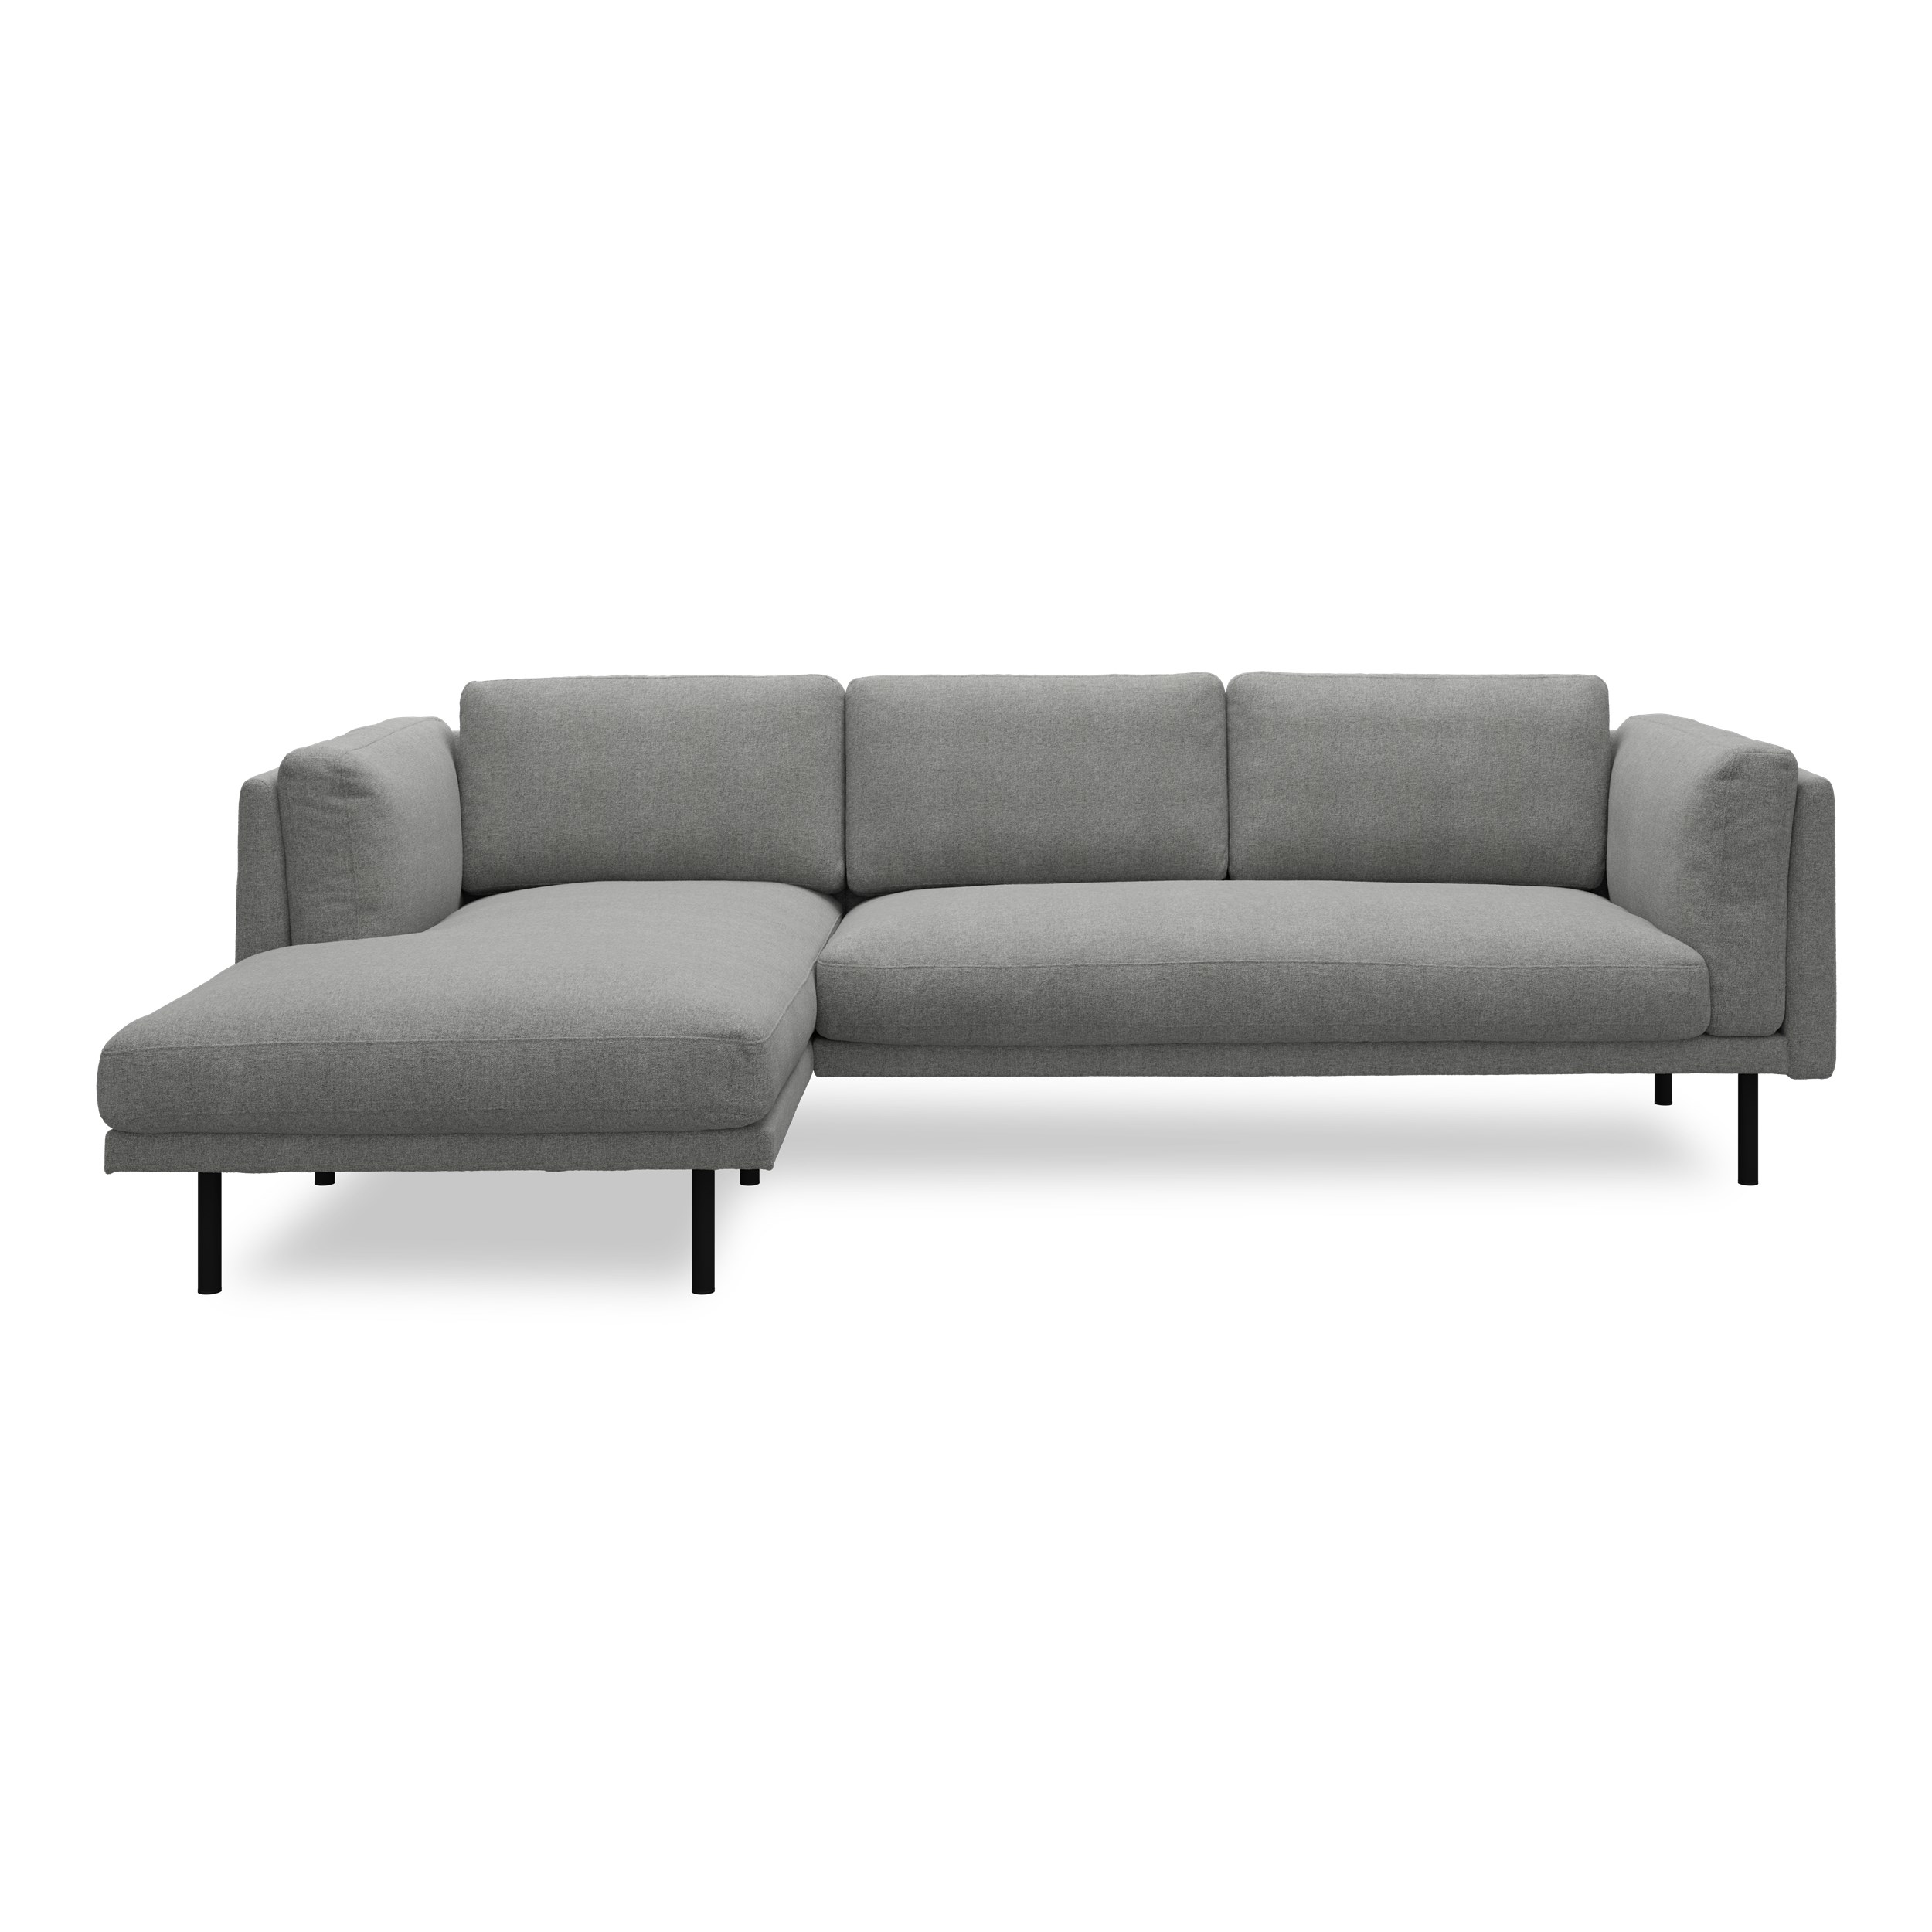 Nebel vänstervänd soffa med schäslong - Soil 167 Zinc textil och svart pulverlackerad metall